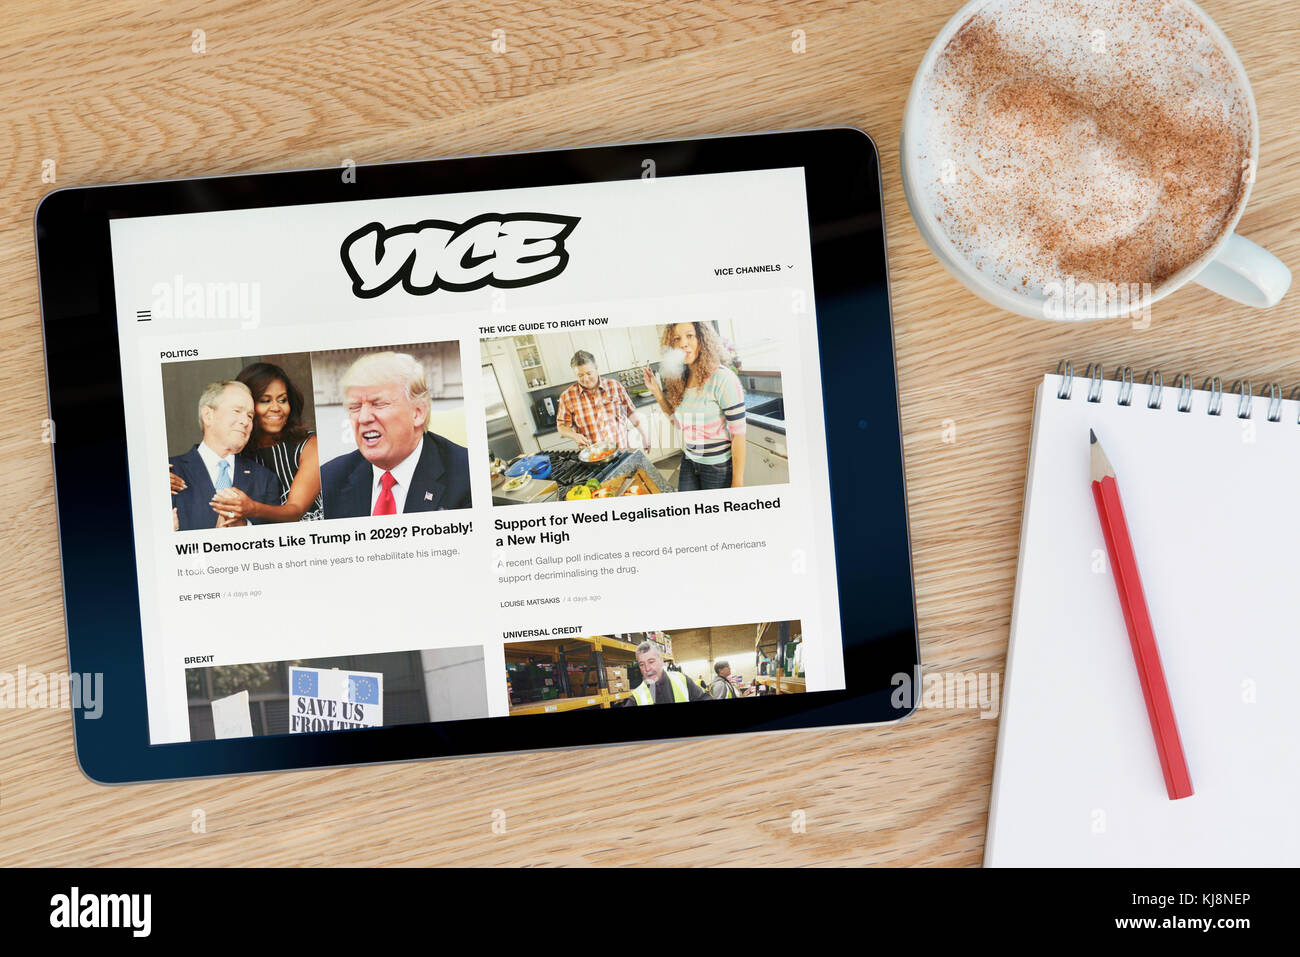 Der Stellvertretende website Funktionen auf einem iPad Tablet Gerät, das auf einem Tisch liegt neben einem Notizblock und Bleistift und eine Tasse Kaffee (nur redaktionell) Stockfoto